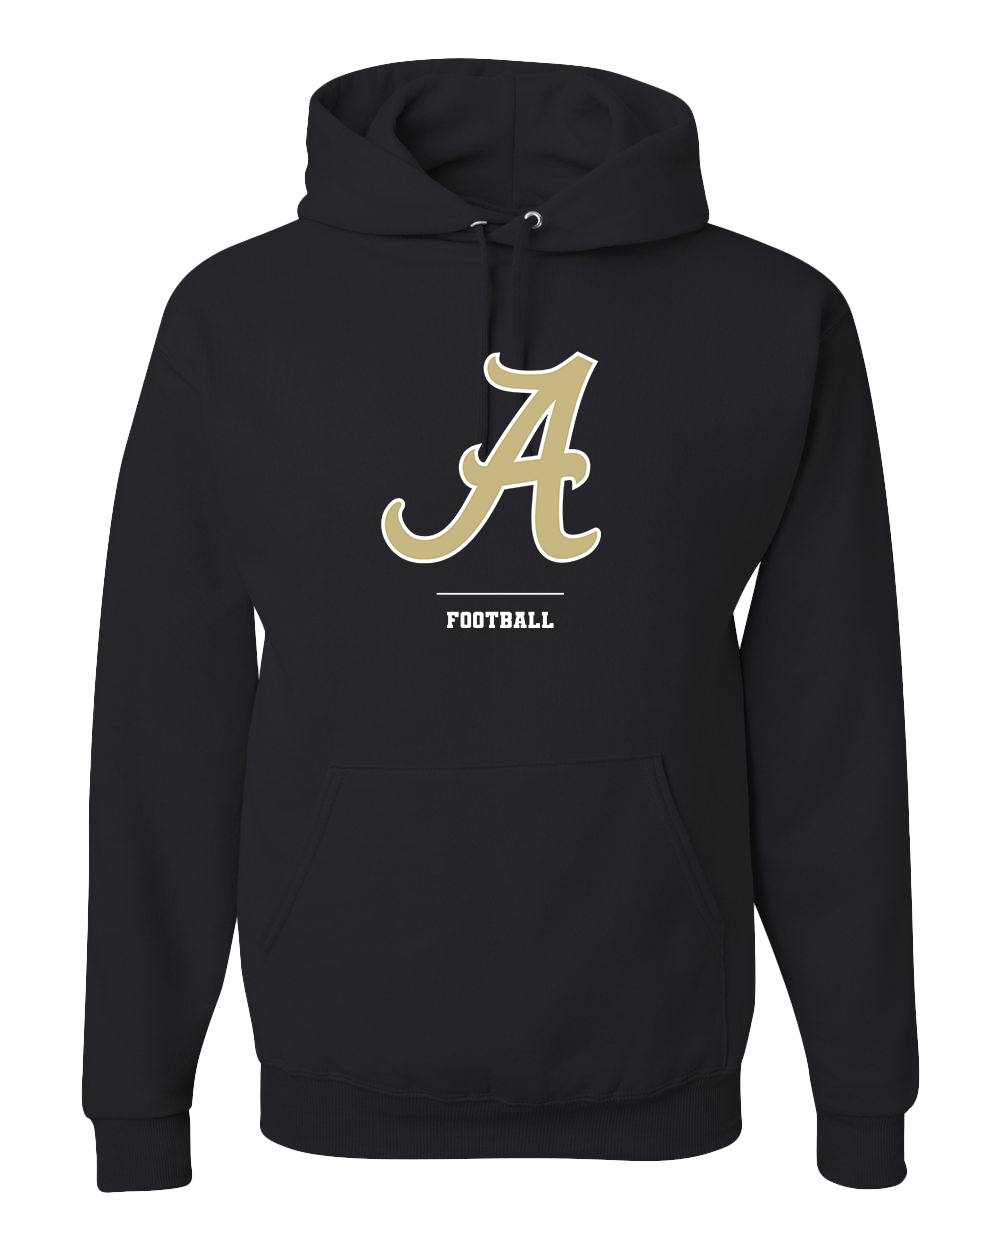 Madison Grant Argyll Football Hooded Sweatshirt - Black